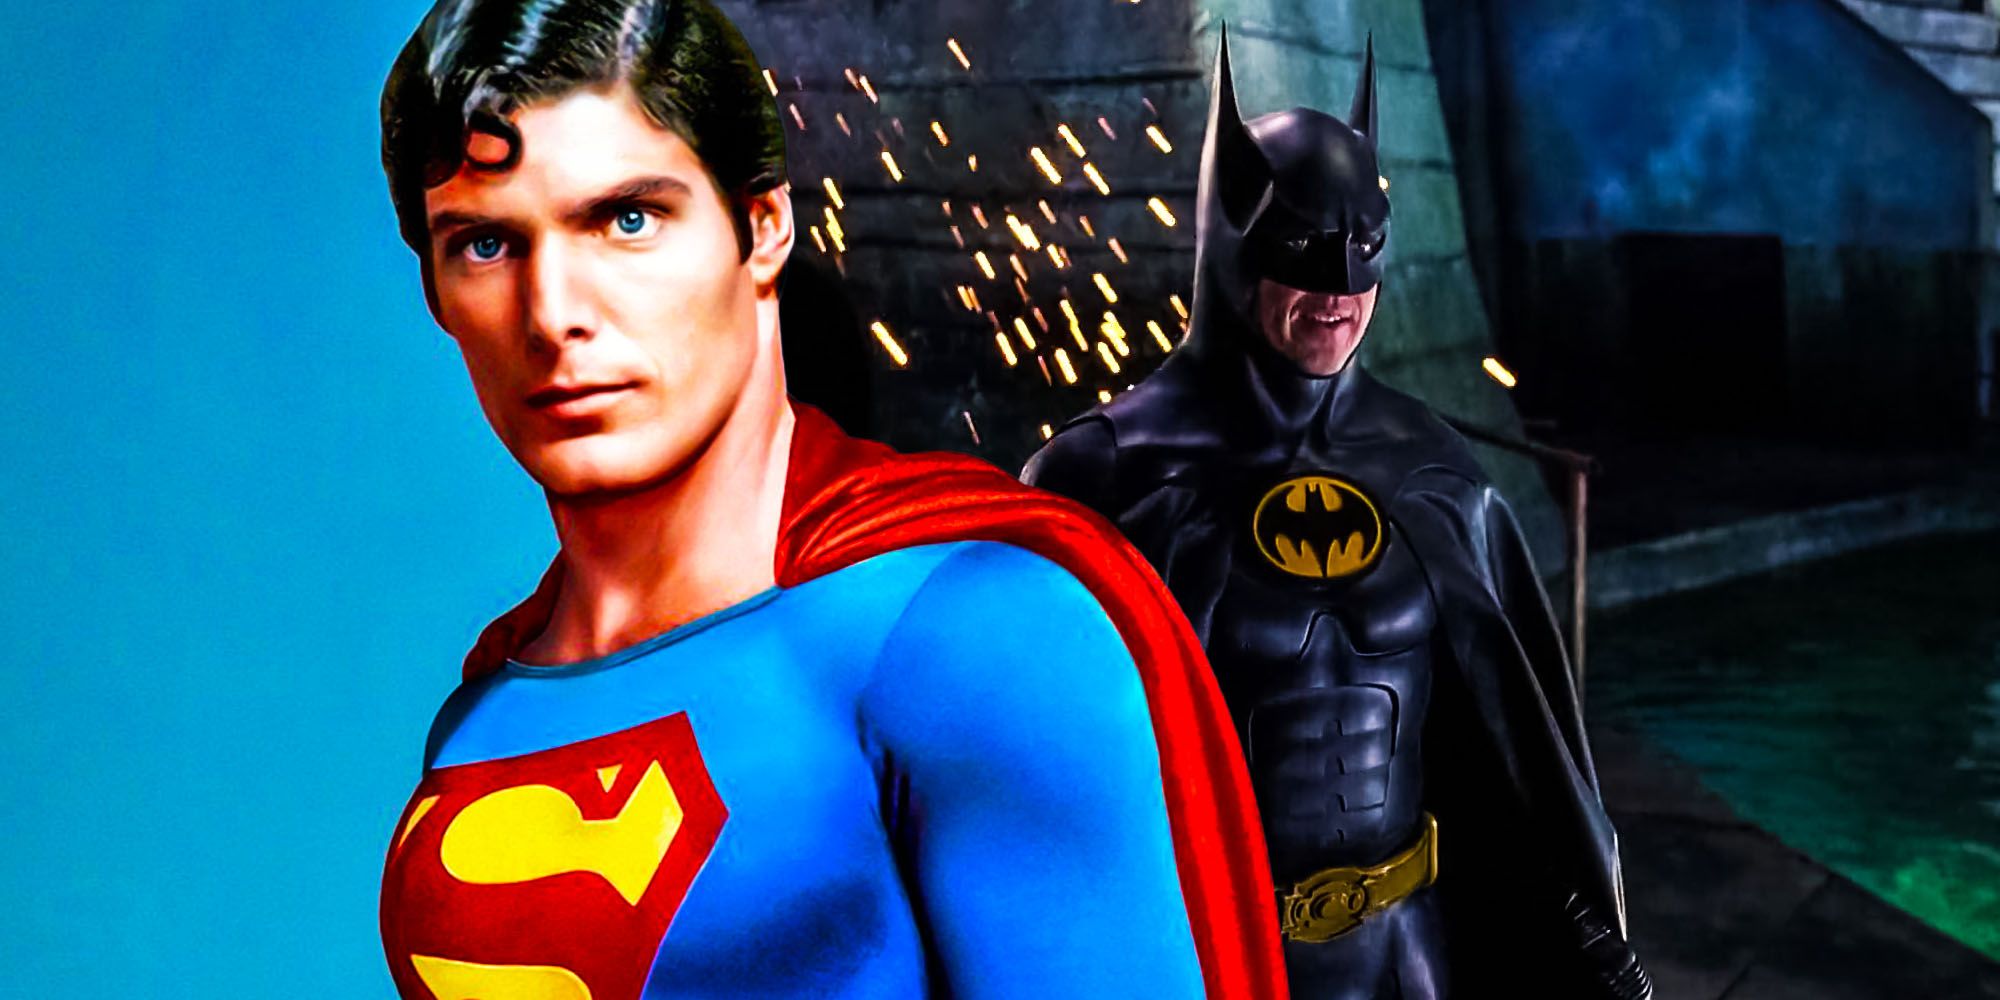 Christopher reeves superman dan michael keaton batman sama semesta